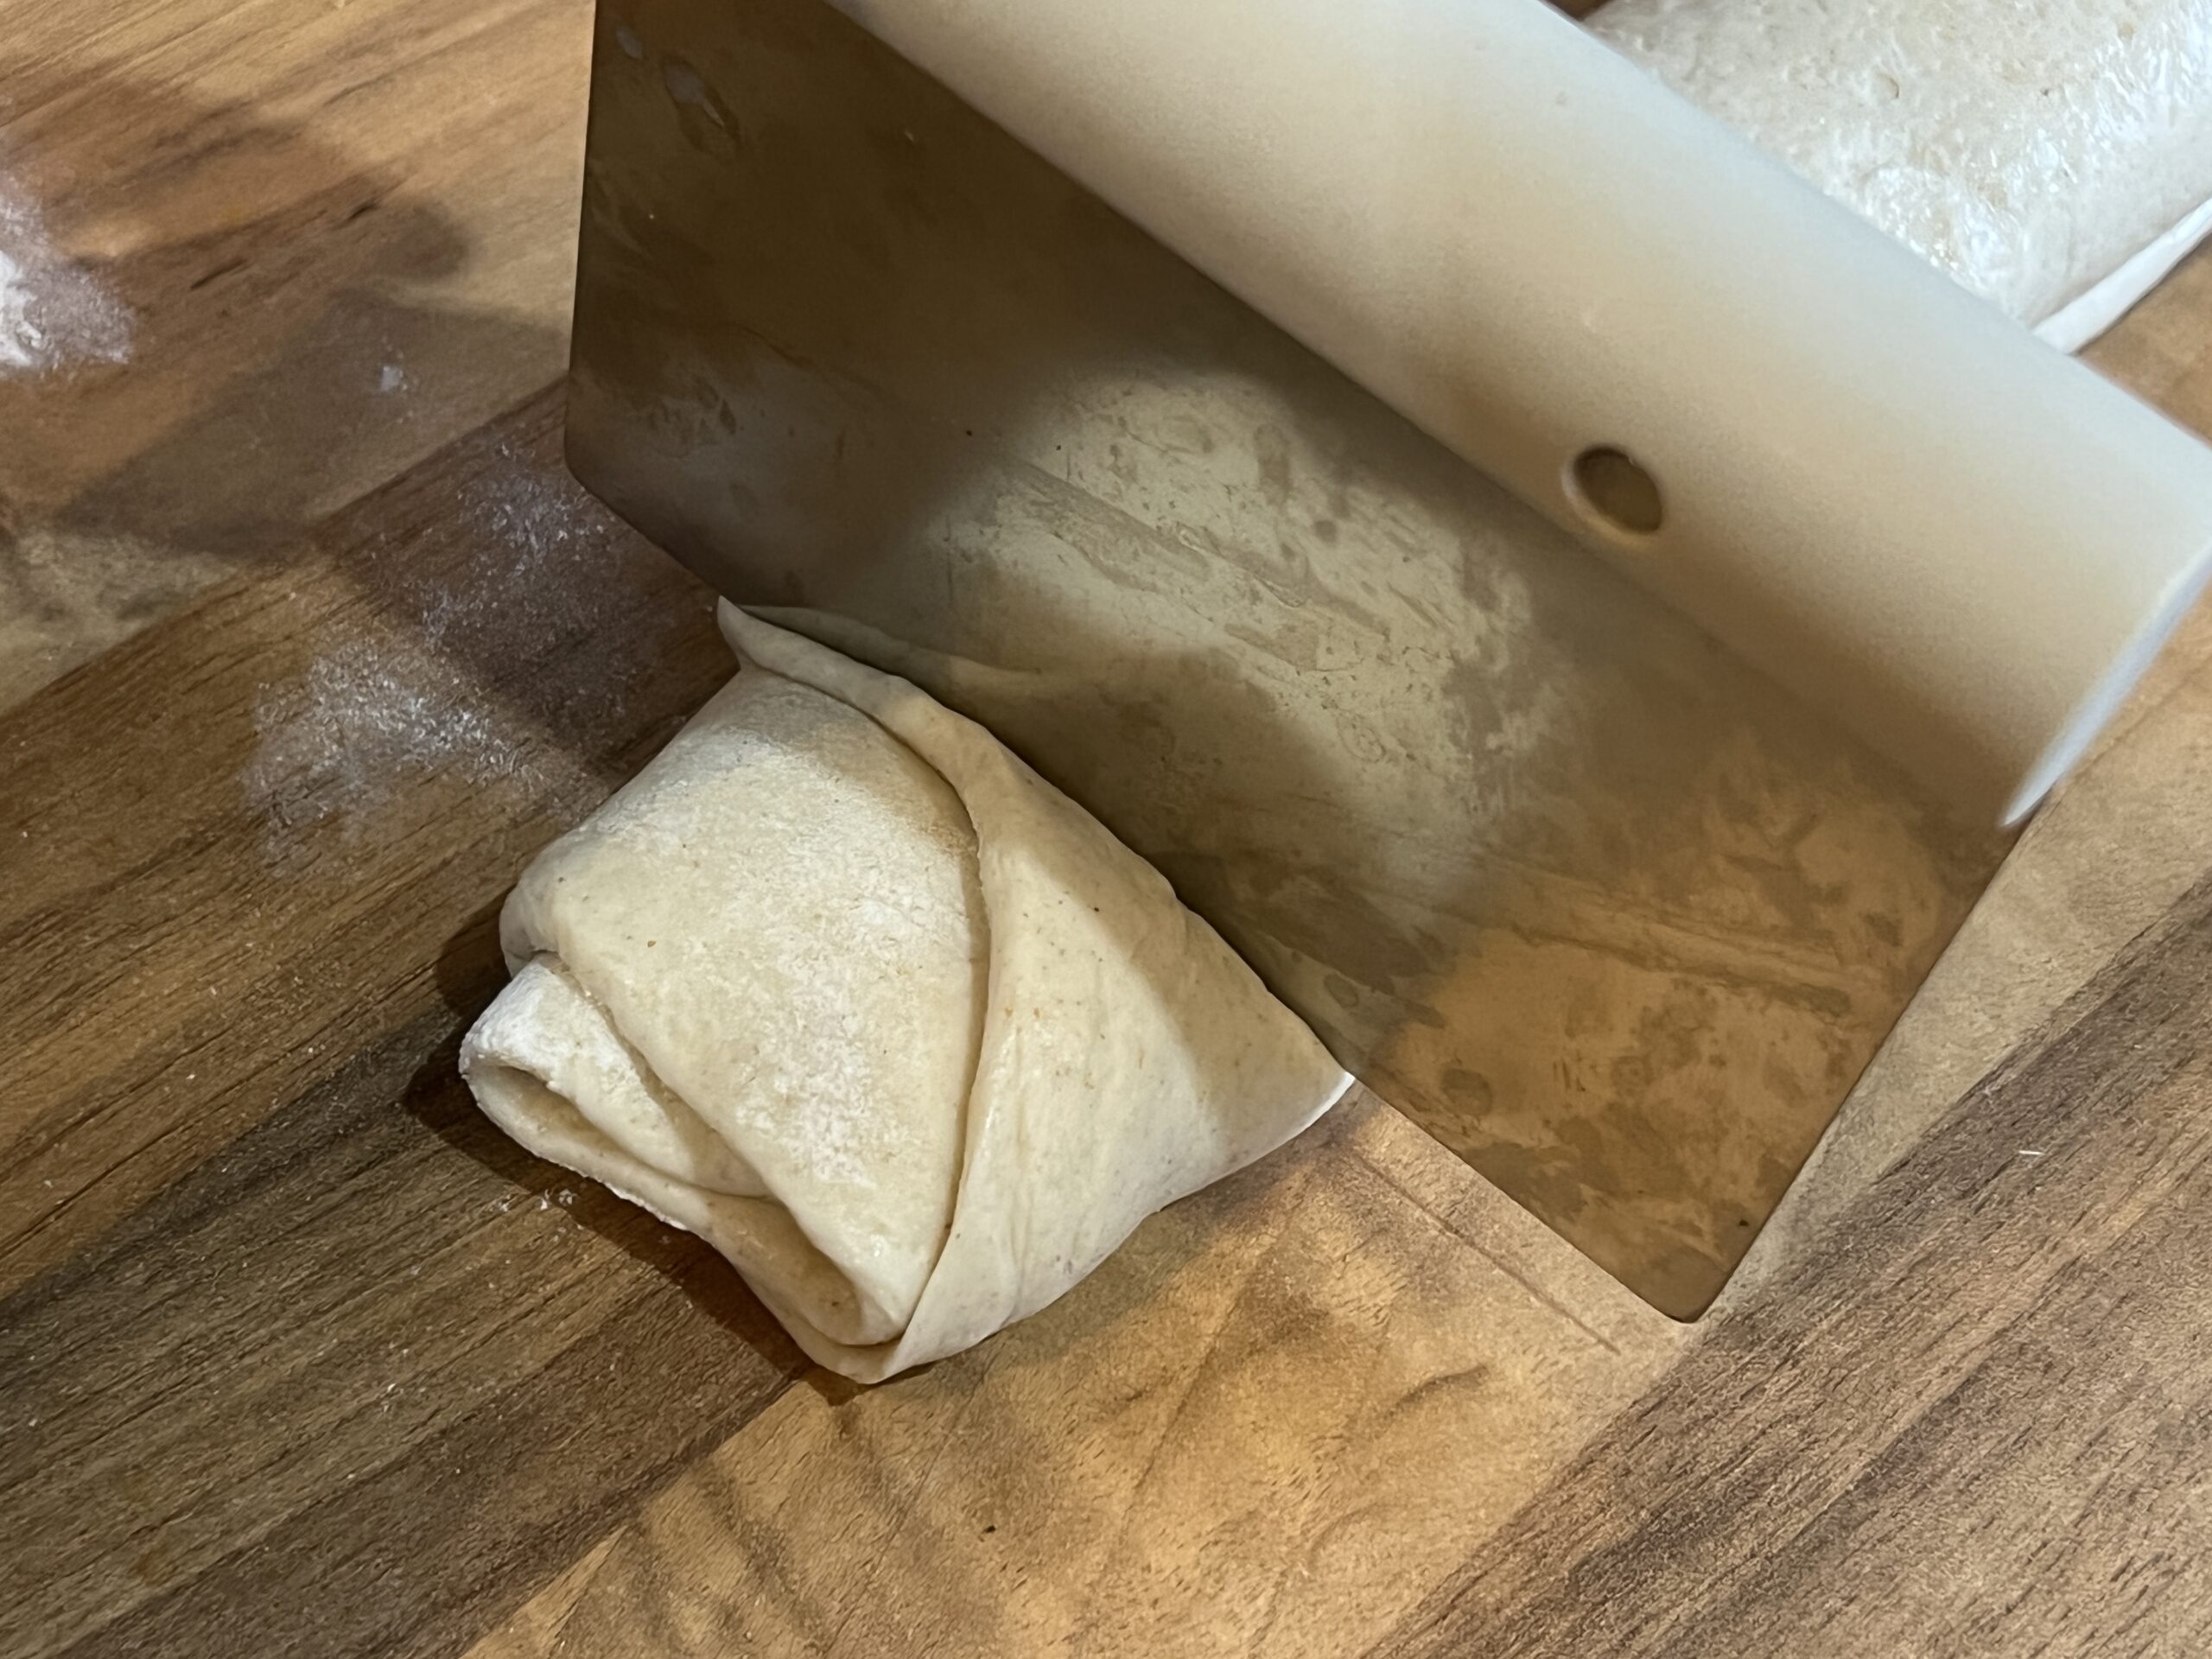 Tingmo Recipe (Steamed Bread)